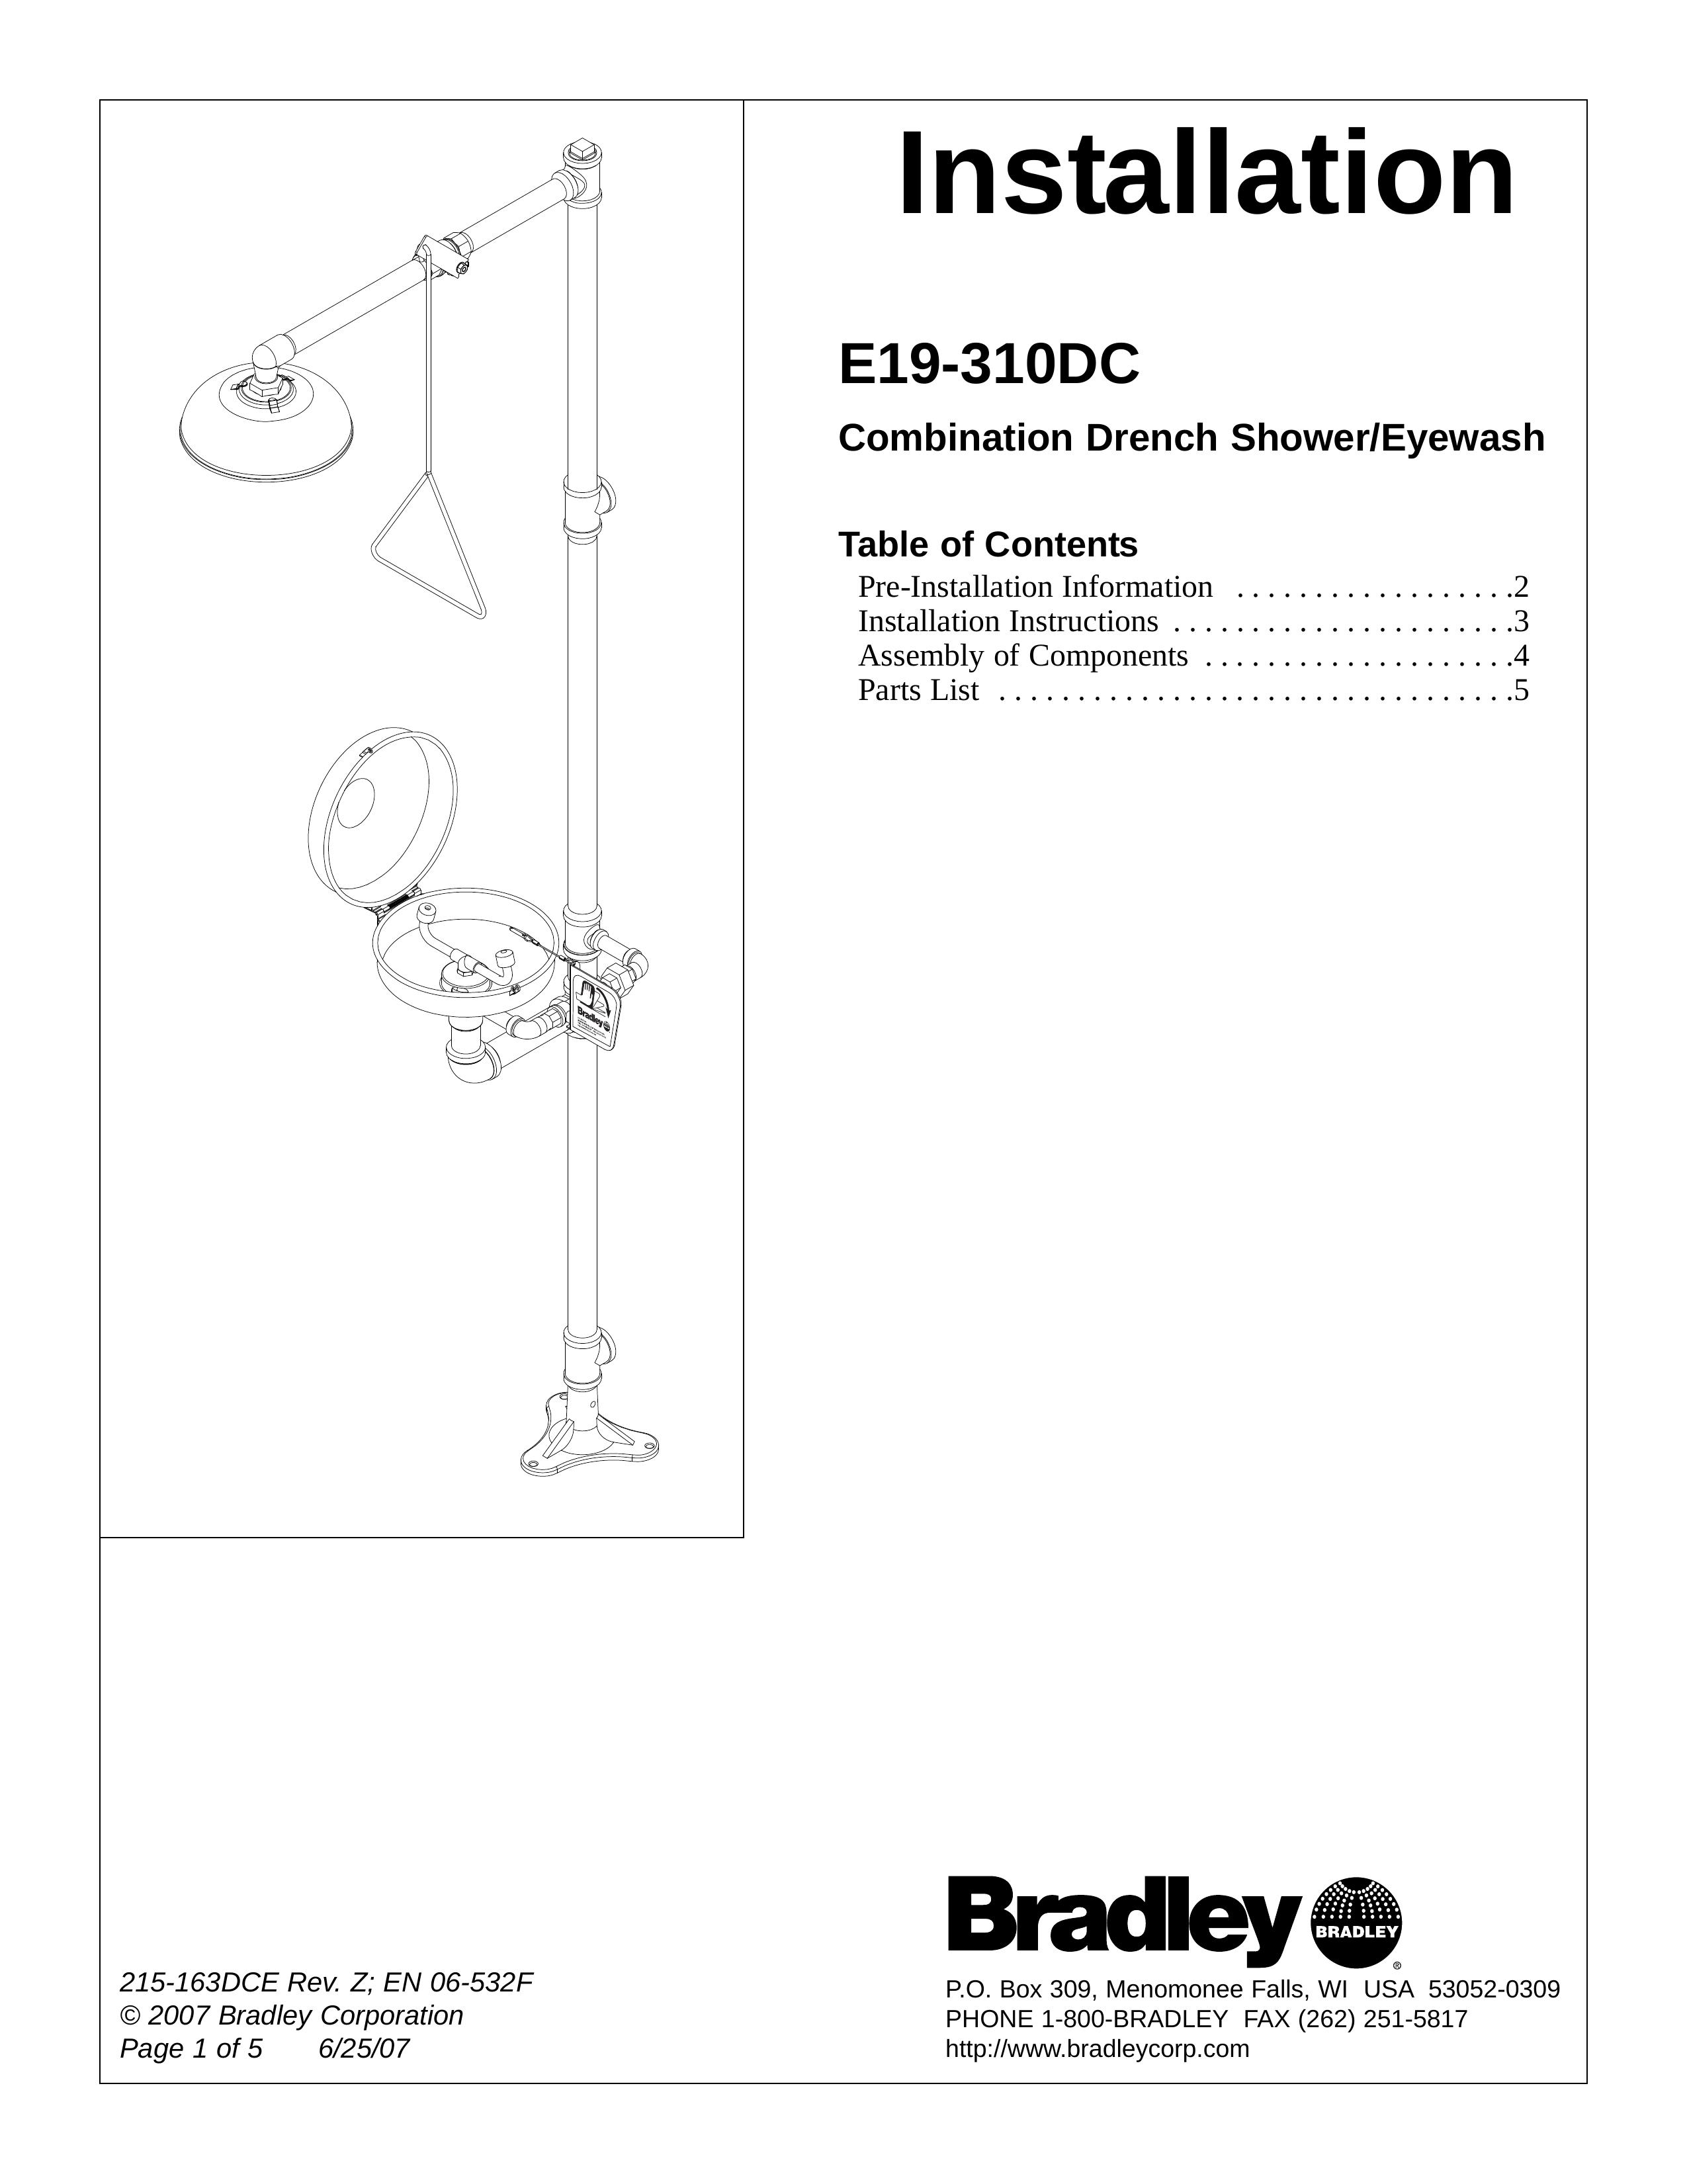 Bradley Smoker E19-310DC Outdoor Shower User Manual